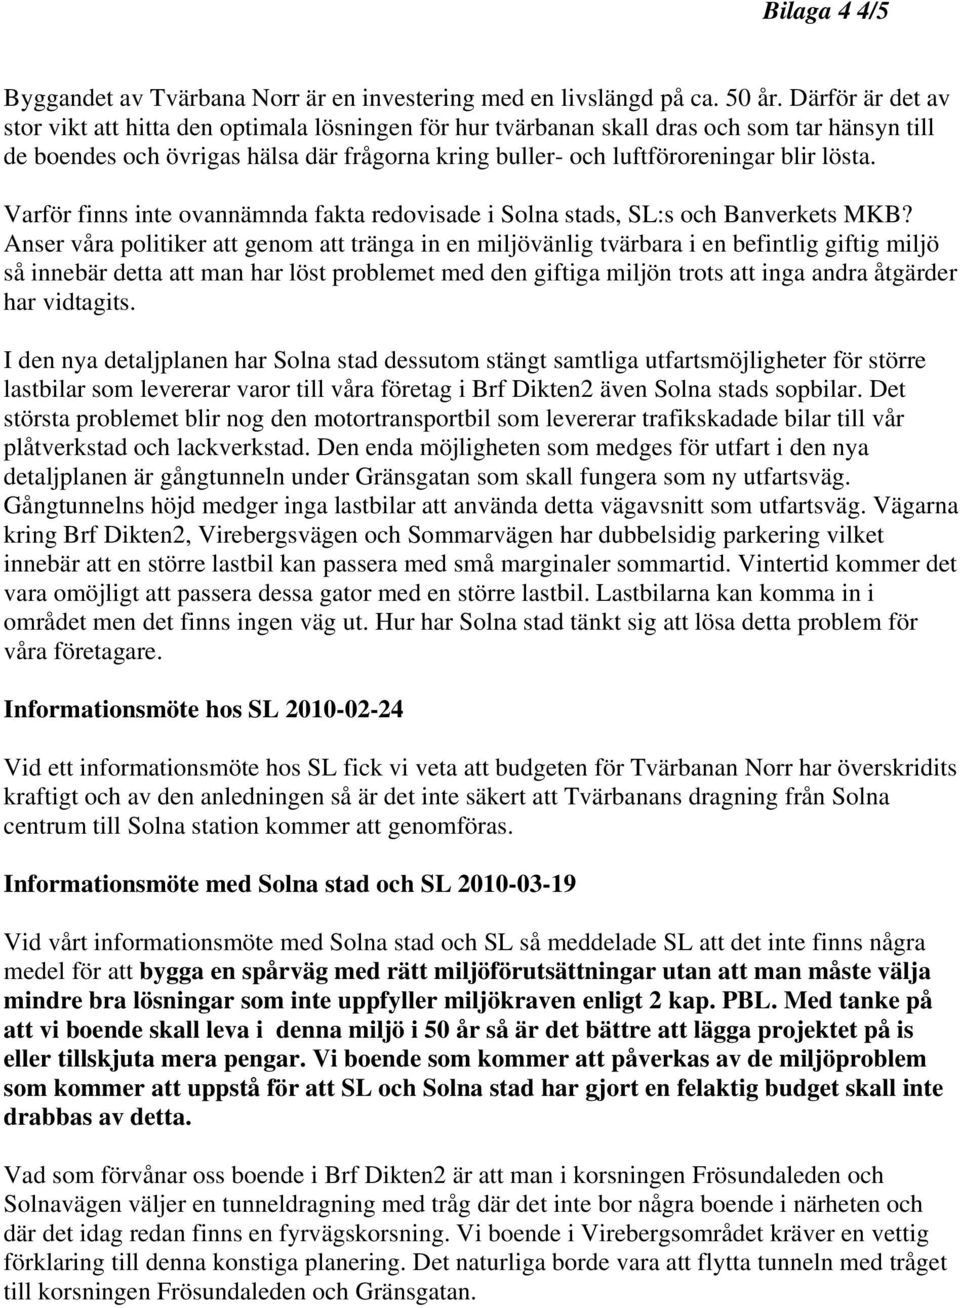 lösta. Varför finns inte ovannämnda fakta redovisade i Solna stads, SL:s och Banverkets MKB?